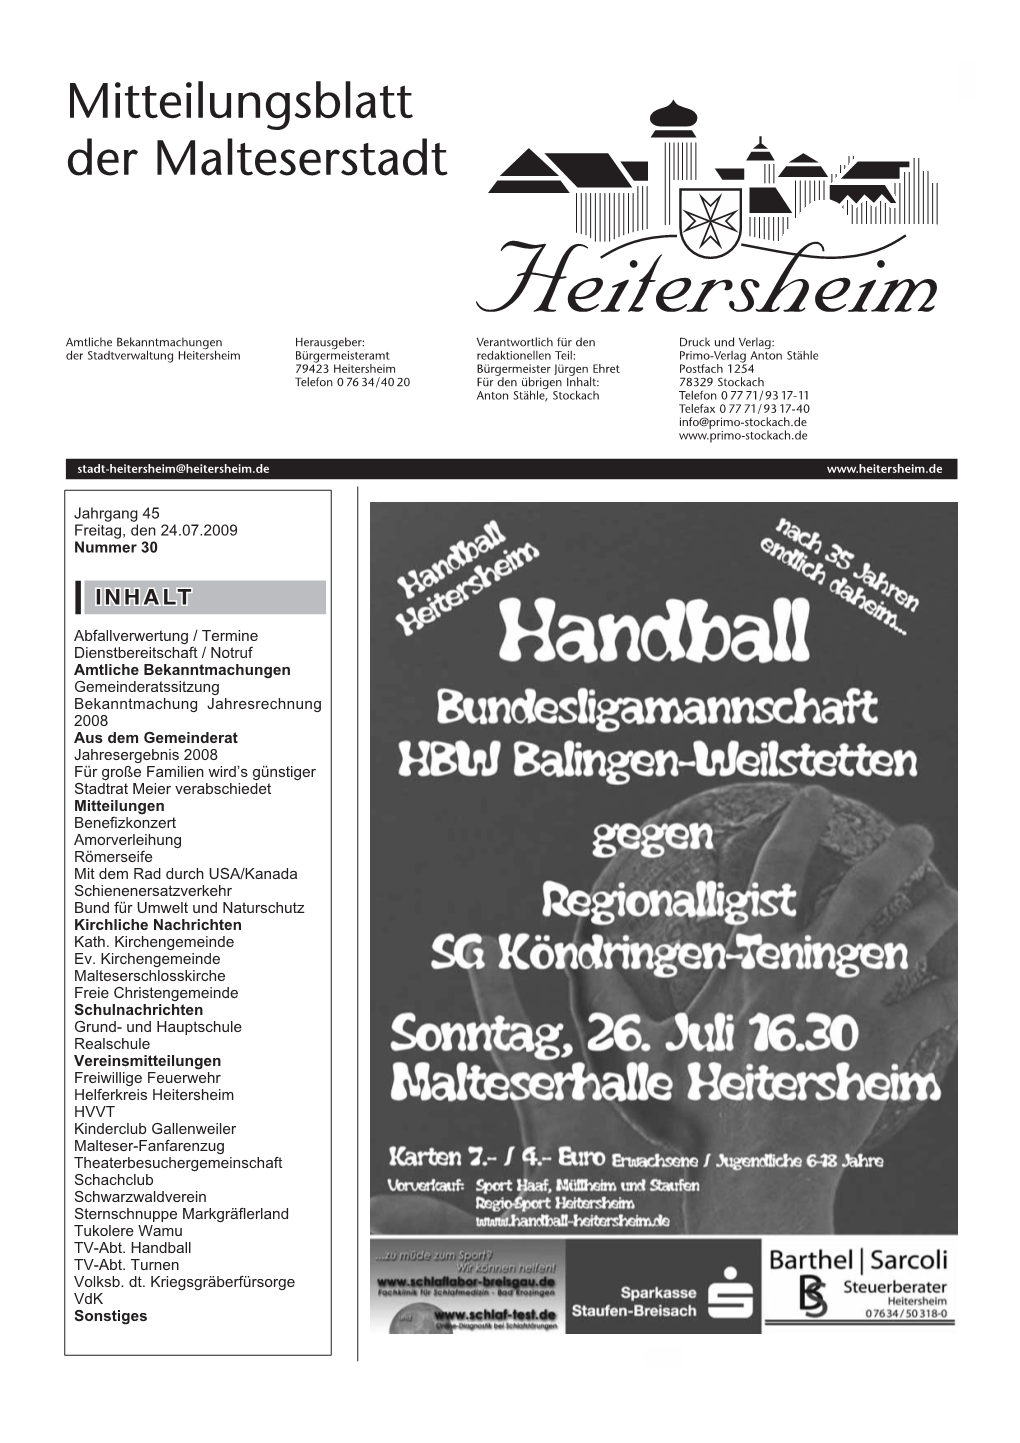 Mitteilungsblatt Nr. 30 Vom 24.07.2009